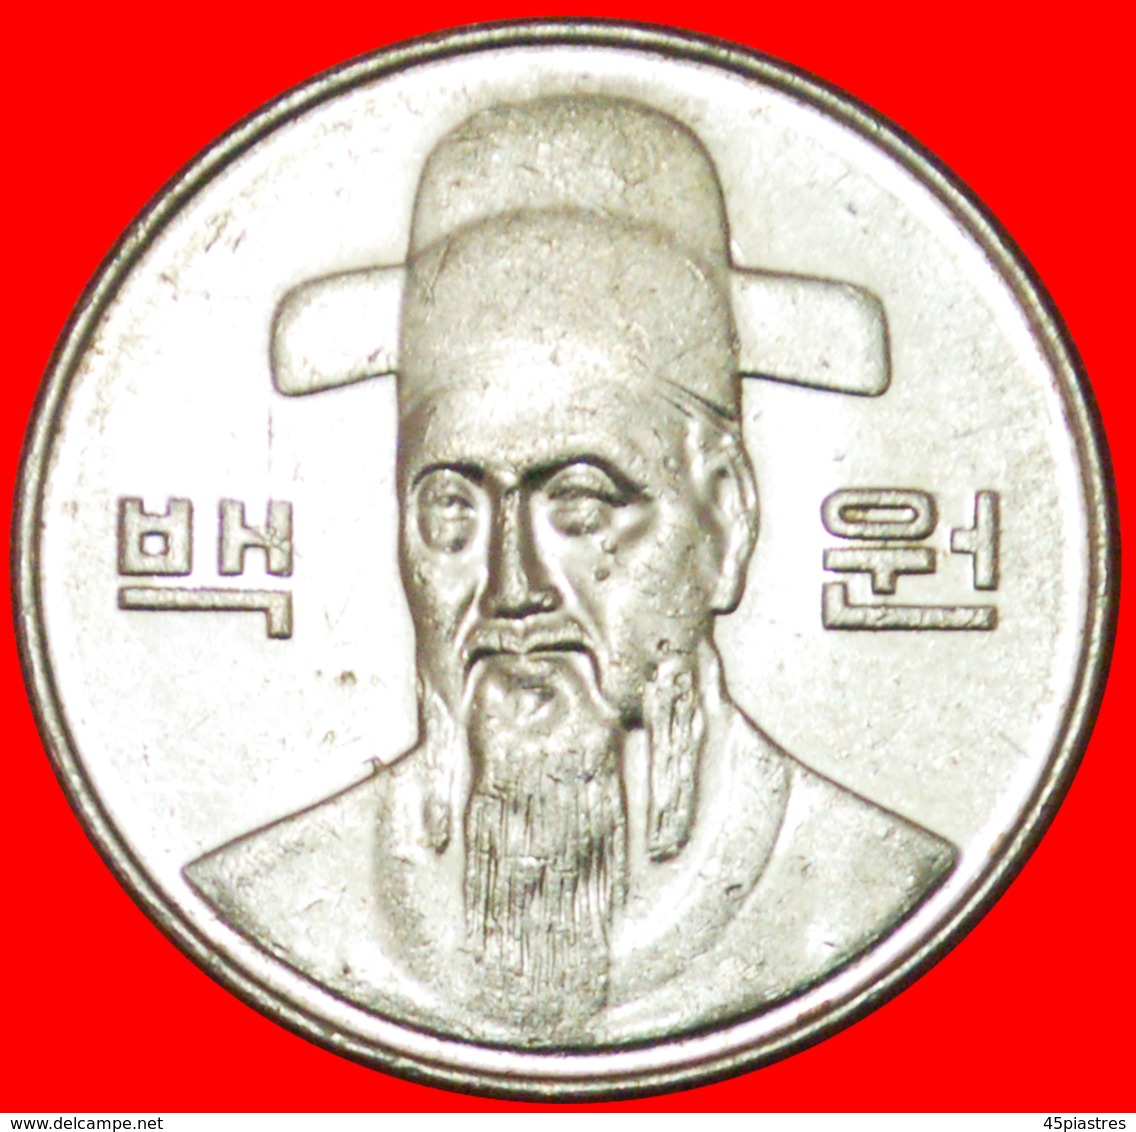 # ADMIRAL (1545-1598): SOUTH KOREA ★ 100 WON 2006 MINT LUSTER! LOW START ★ NO RESERVE! - Corée Du Sud